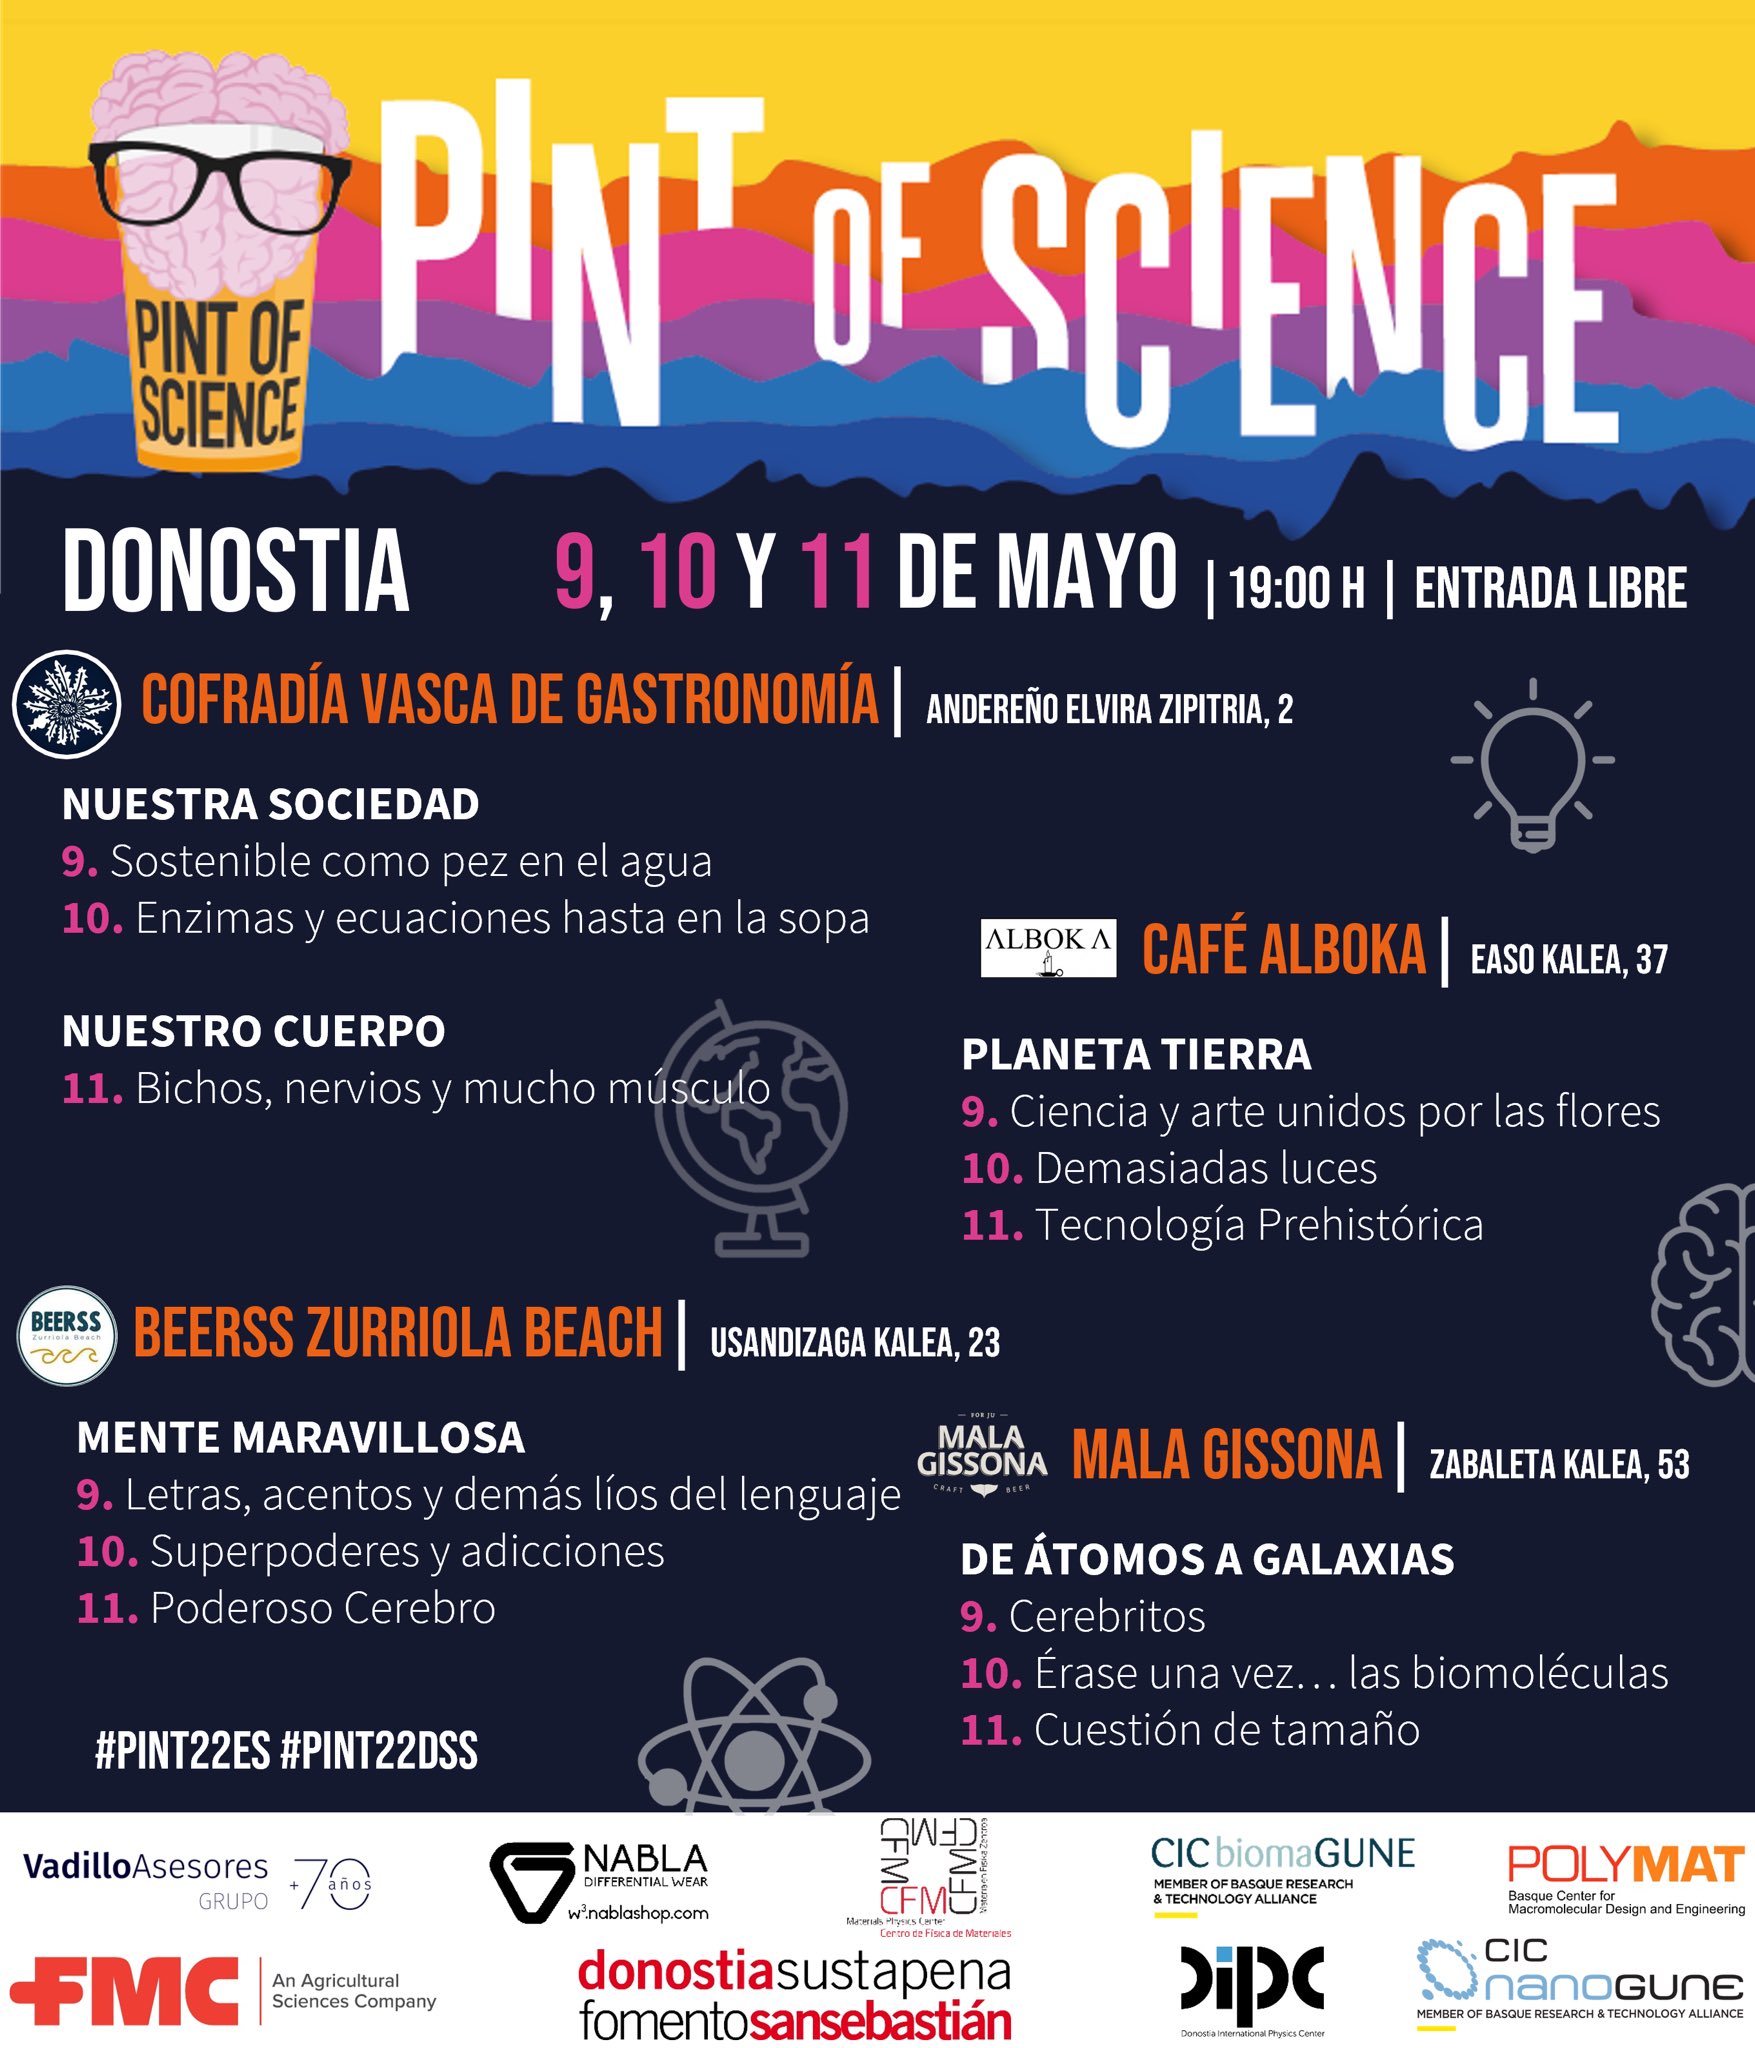 paint of science - 'Pint of science' se celebrará también en cuatro bares de Donostia